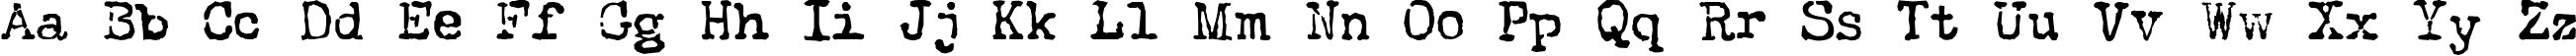 Пример написания английского алфавита шрифтом The Quest Normal